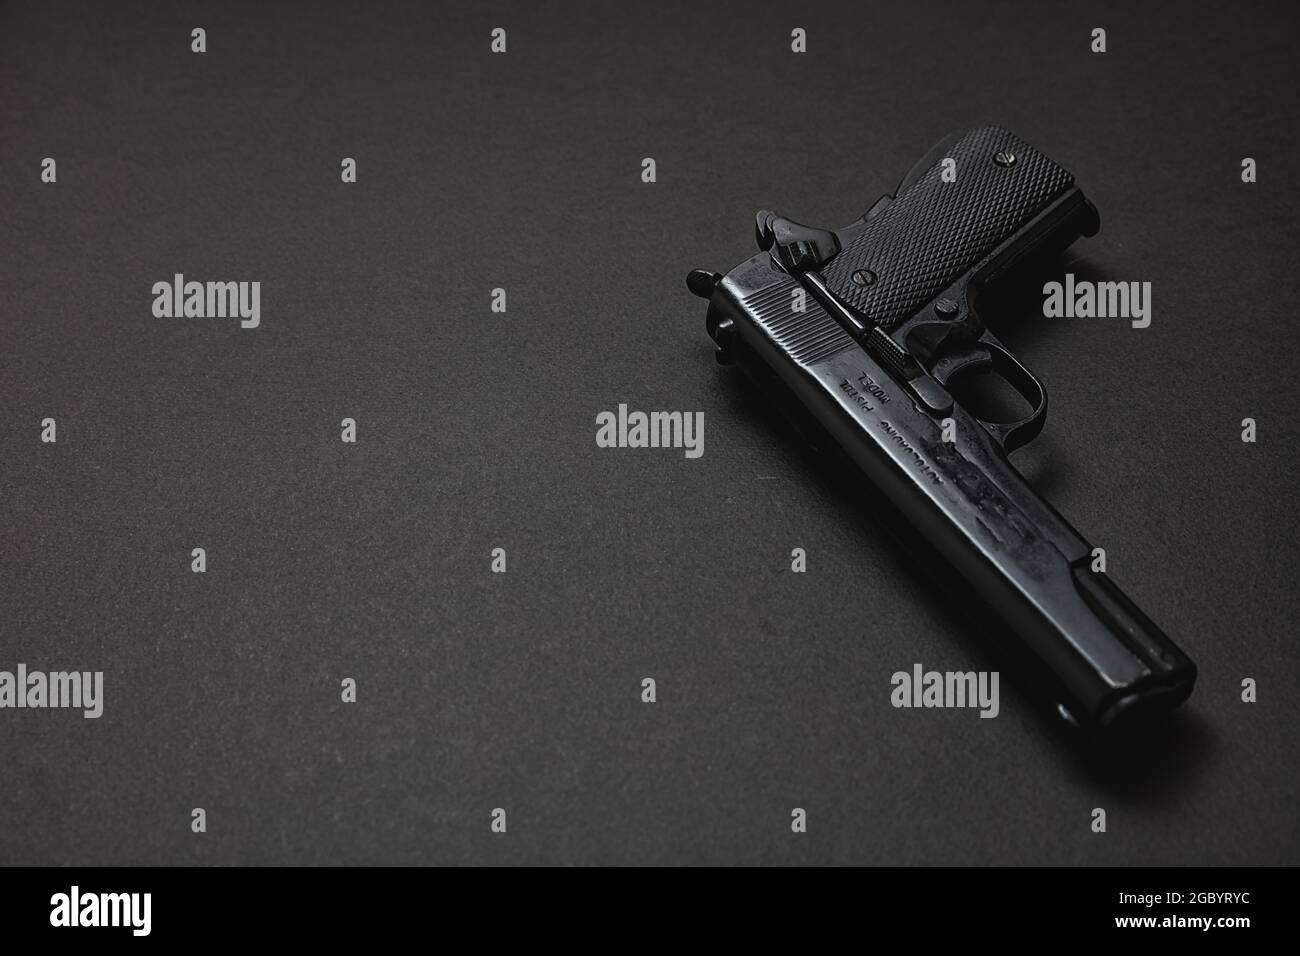 Pistolet 9 mm sur fond noir. Arme en métal noir, arme de poing automatique pour l'armée et la sécurité. Vue latérale, espace de copie, modèle Banque D'Images